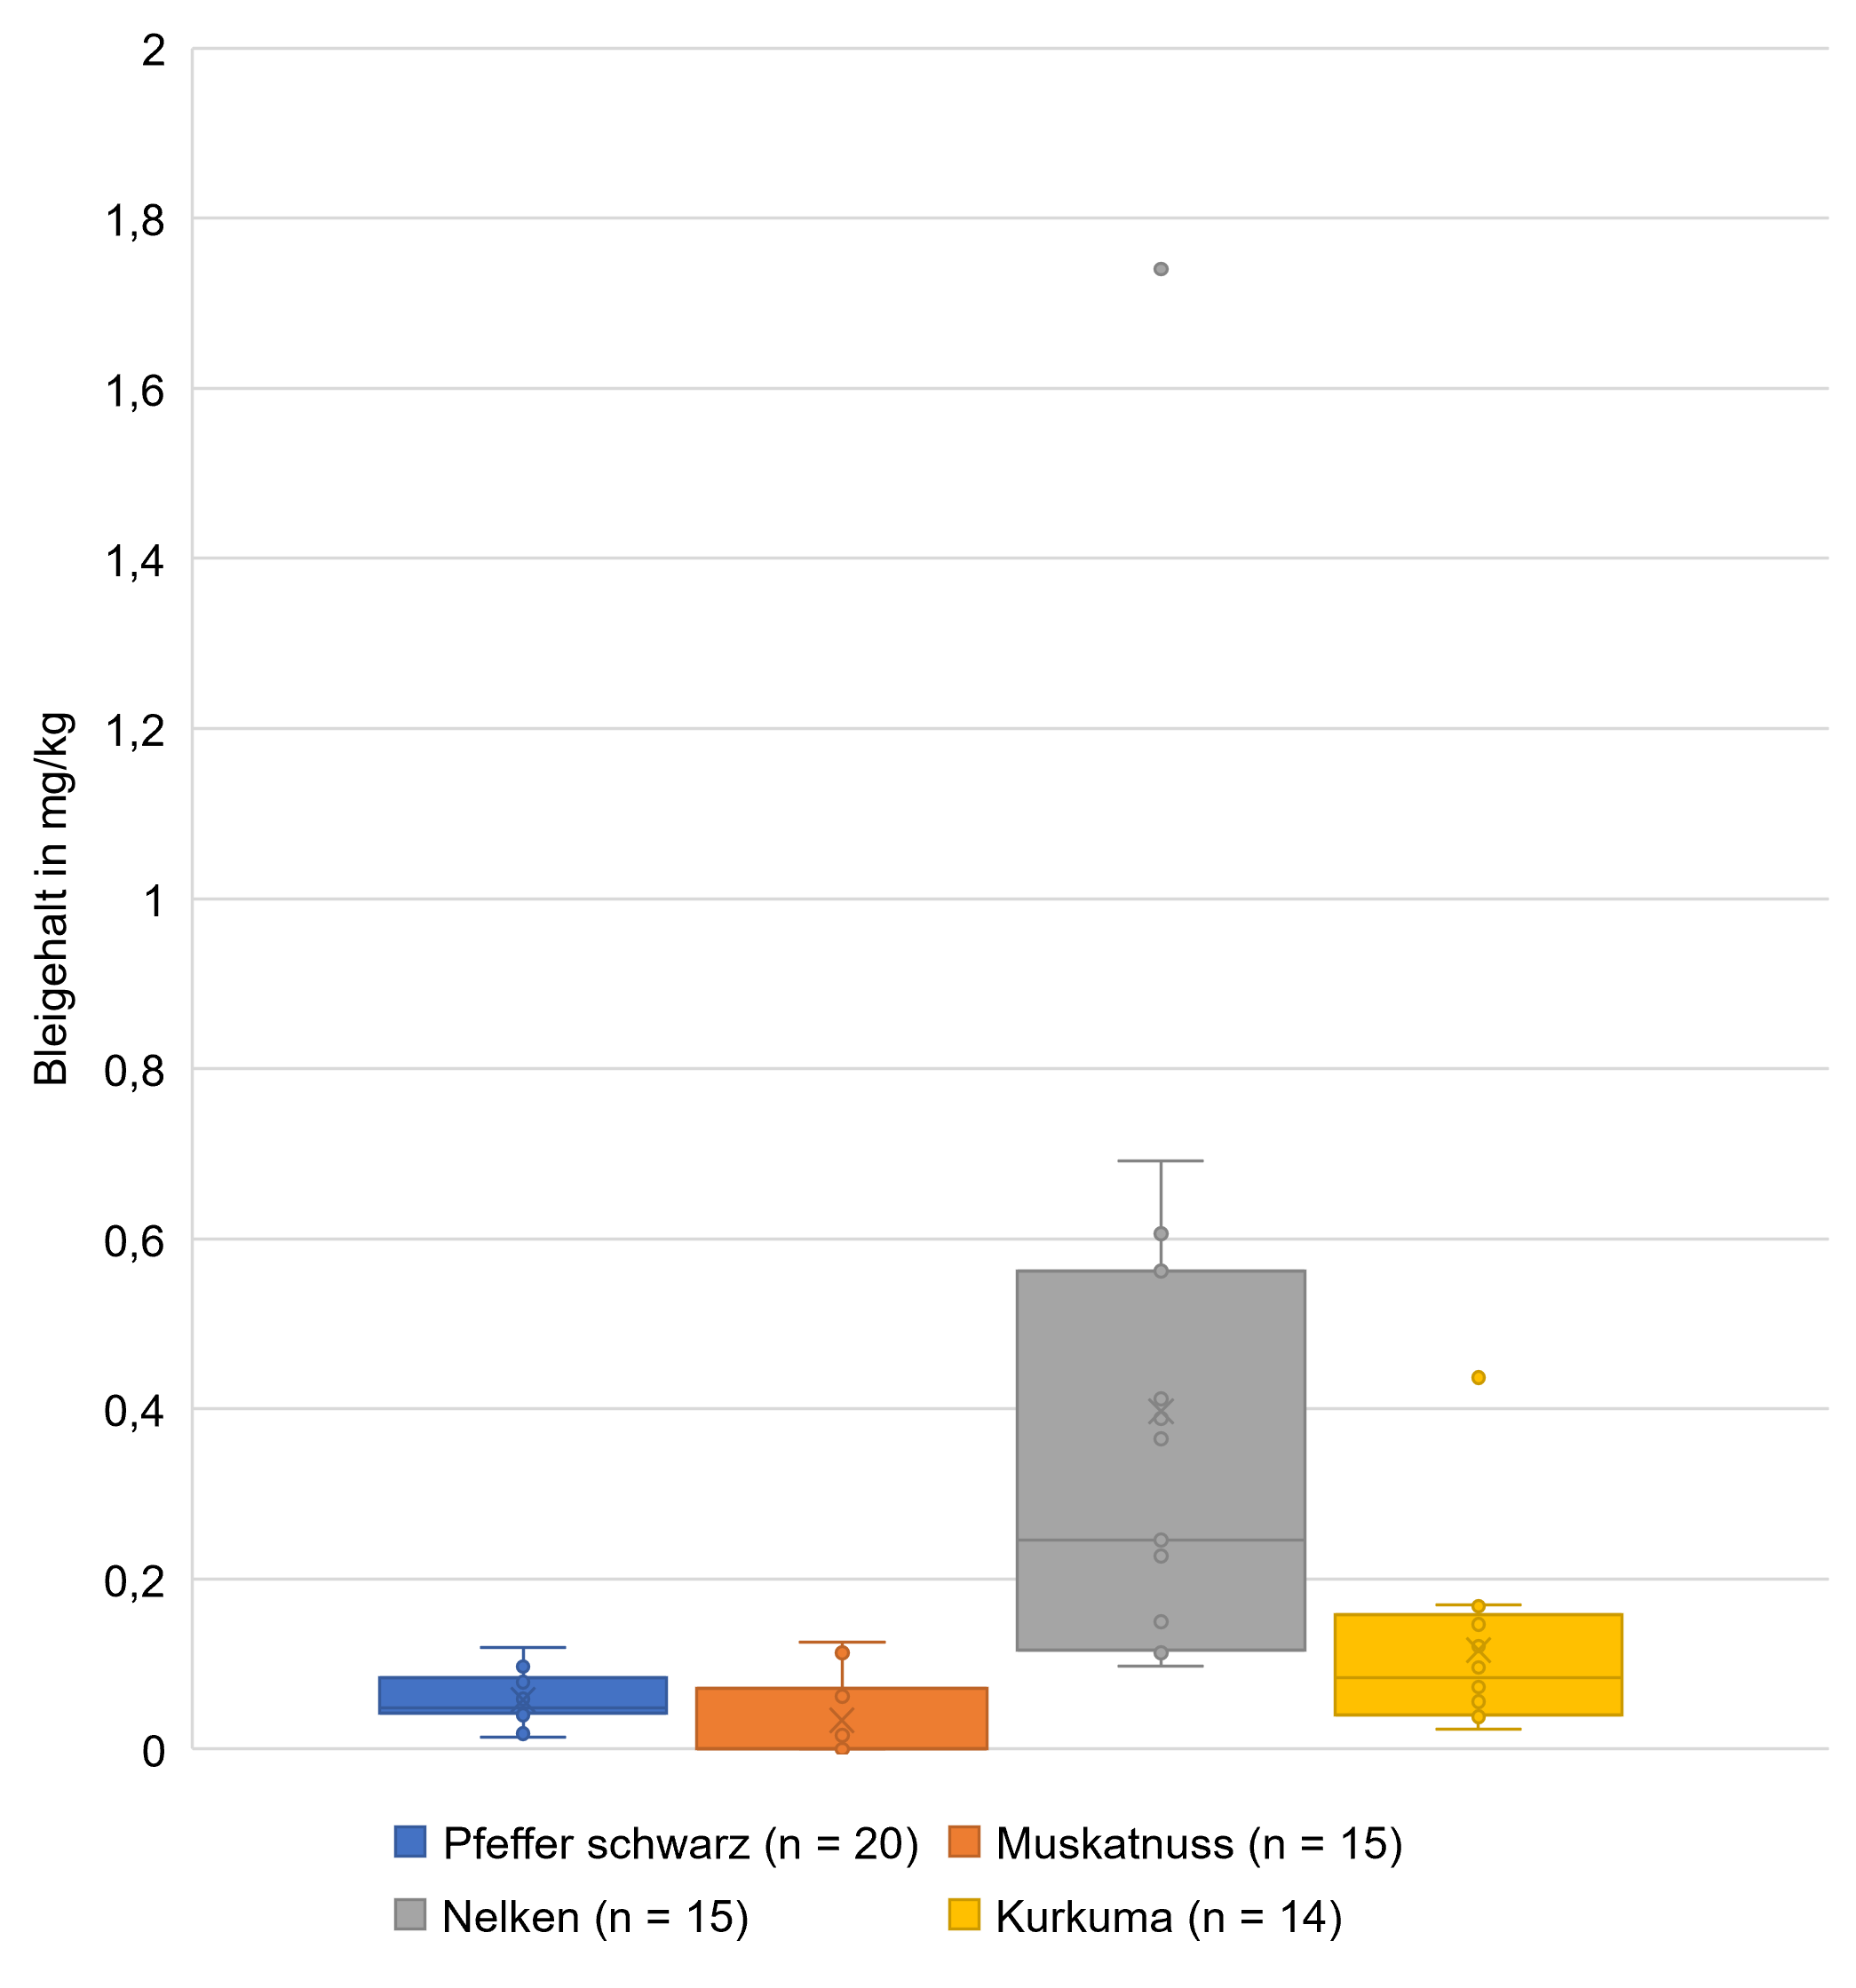 Die Abbildung zeigt in einem Kastendiagramm die Verteilung der Bleigehalte in den untersuchten Proben schwarzer Pfeffer, Muskatnuss, Nelken und Kurkuma. Erkennbar sind die Einzelwerte als Punkte, der Median, der Mittelwert und die Gesamtspannweite. Die Spannweite für schwarzen Pfeffer liegt bei 0,0014 bis 0,119 mg/kg, für Muskatnuss bei Null bis 0,126 mg/kg, wobei Werte kleiner der Bestimmungsgrenze gleich Null gesetzt wurden. Bei Nelken liegt die Spannweite bei 0,098 bis 0,692 mg/kg mit einem Ausreißerwert bei 1,74 mg/kg und bei Kurkuma liegt die Spannweite bei 0,023 bis 0,17 mg/kg mit einem Ausreißerwert bei 0,437 mg/kg. Die Höchstgehalte von 0,60 mg/kg für schwarzen Pfeffer als Fruchtgewürz, 0,90 mg/kg für Muskatnuss als Samengewürz, 1,0 mg/kg für Nelken als Knospengewürz und 1,5 mg/kg für Kurkuma als Wurzelgewürz werden im Diagramm jeweils zum Vergleich als rote Linien angezeigt, ein darüber liegender Einzelwert für Nelken ist mit einem roten Pfeil markiert.